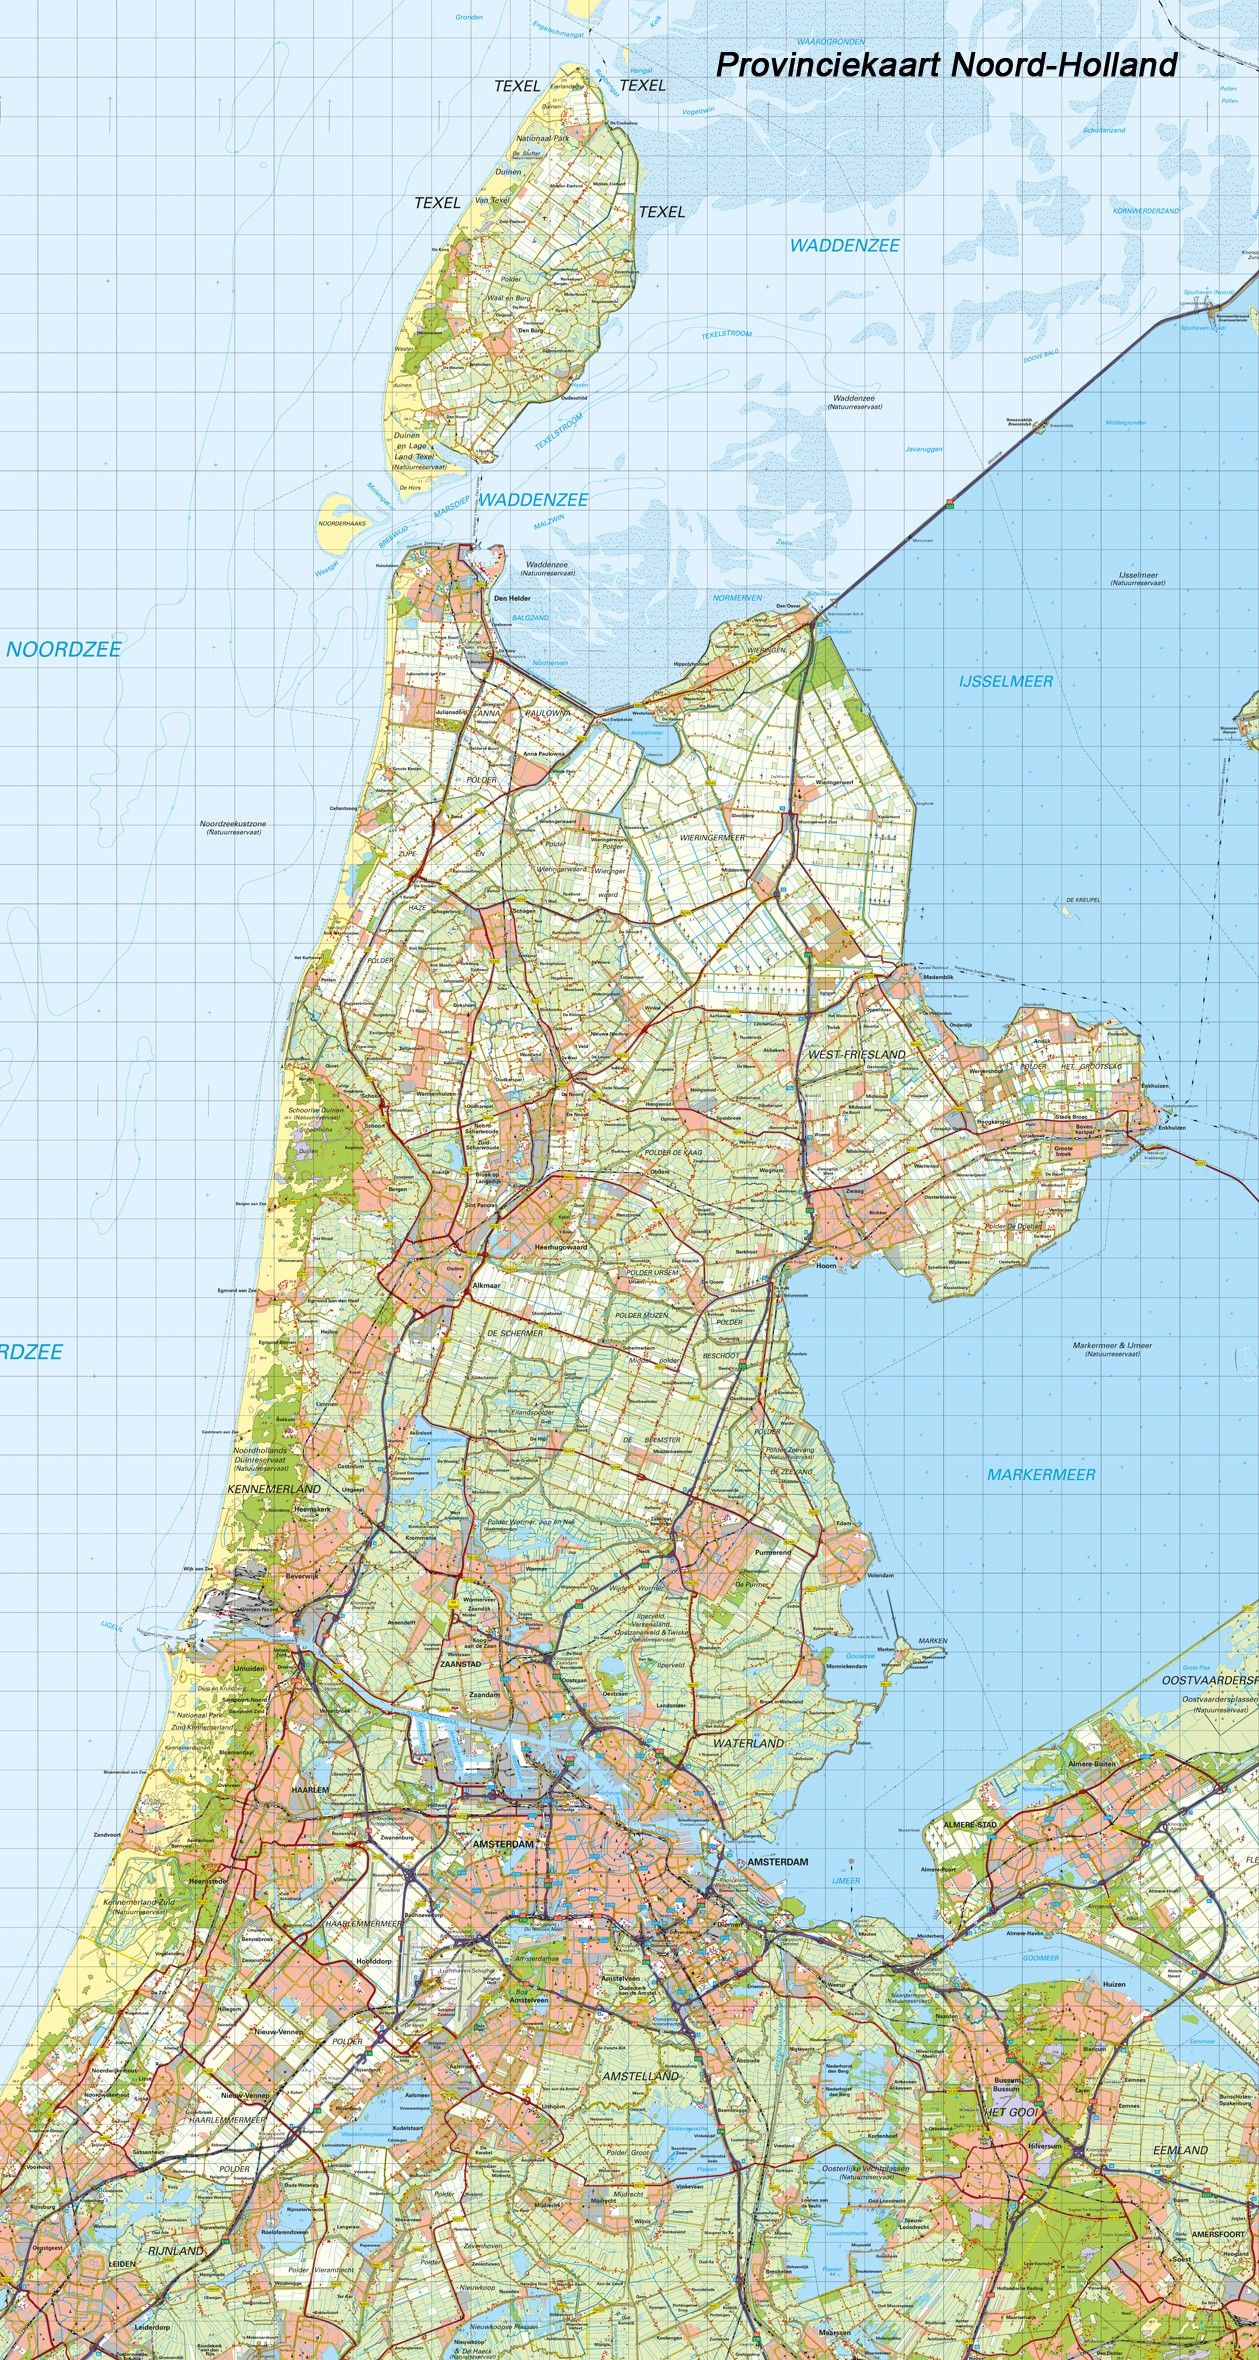 Digitale Provinciekaart Noord Holland 1:100.000